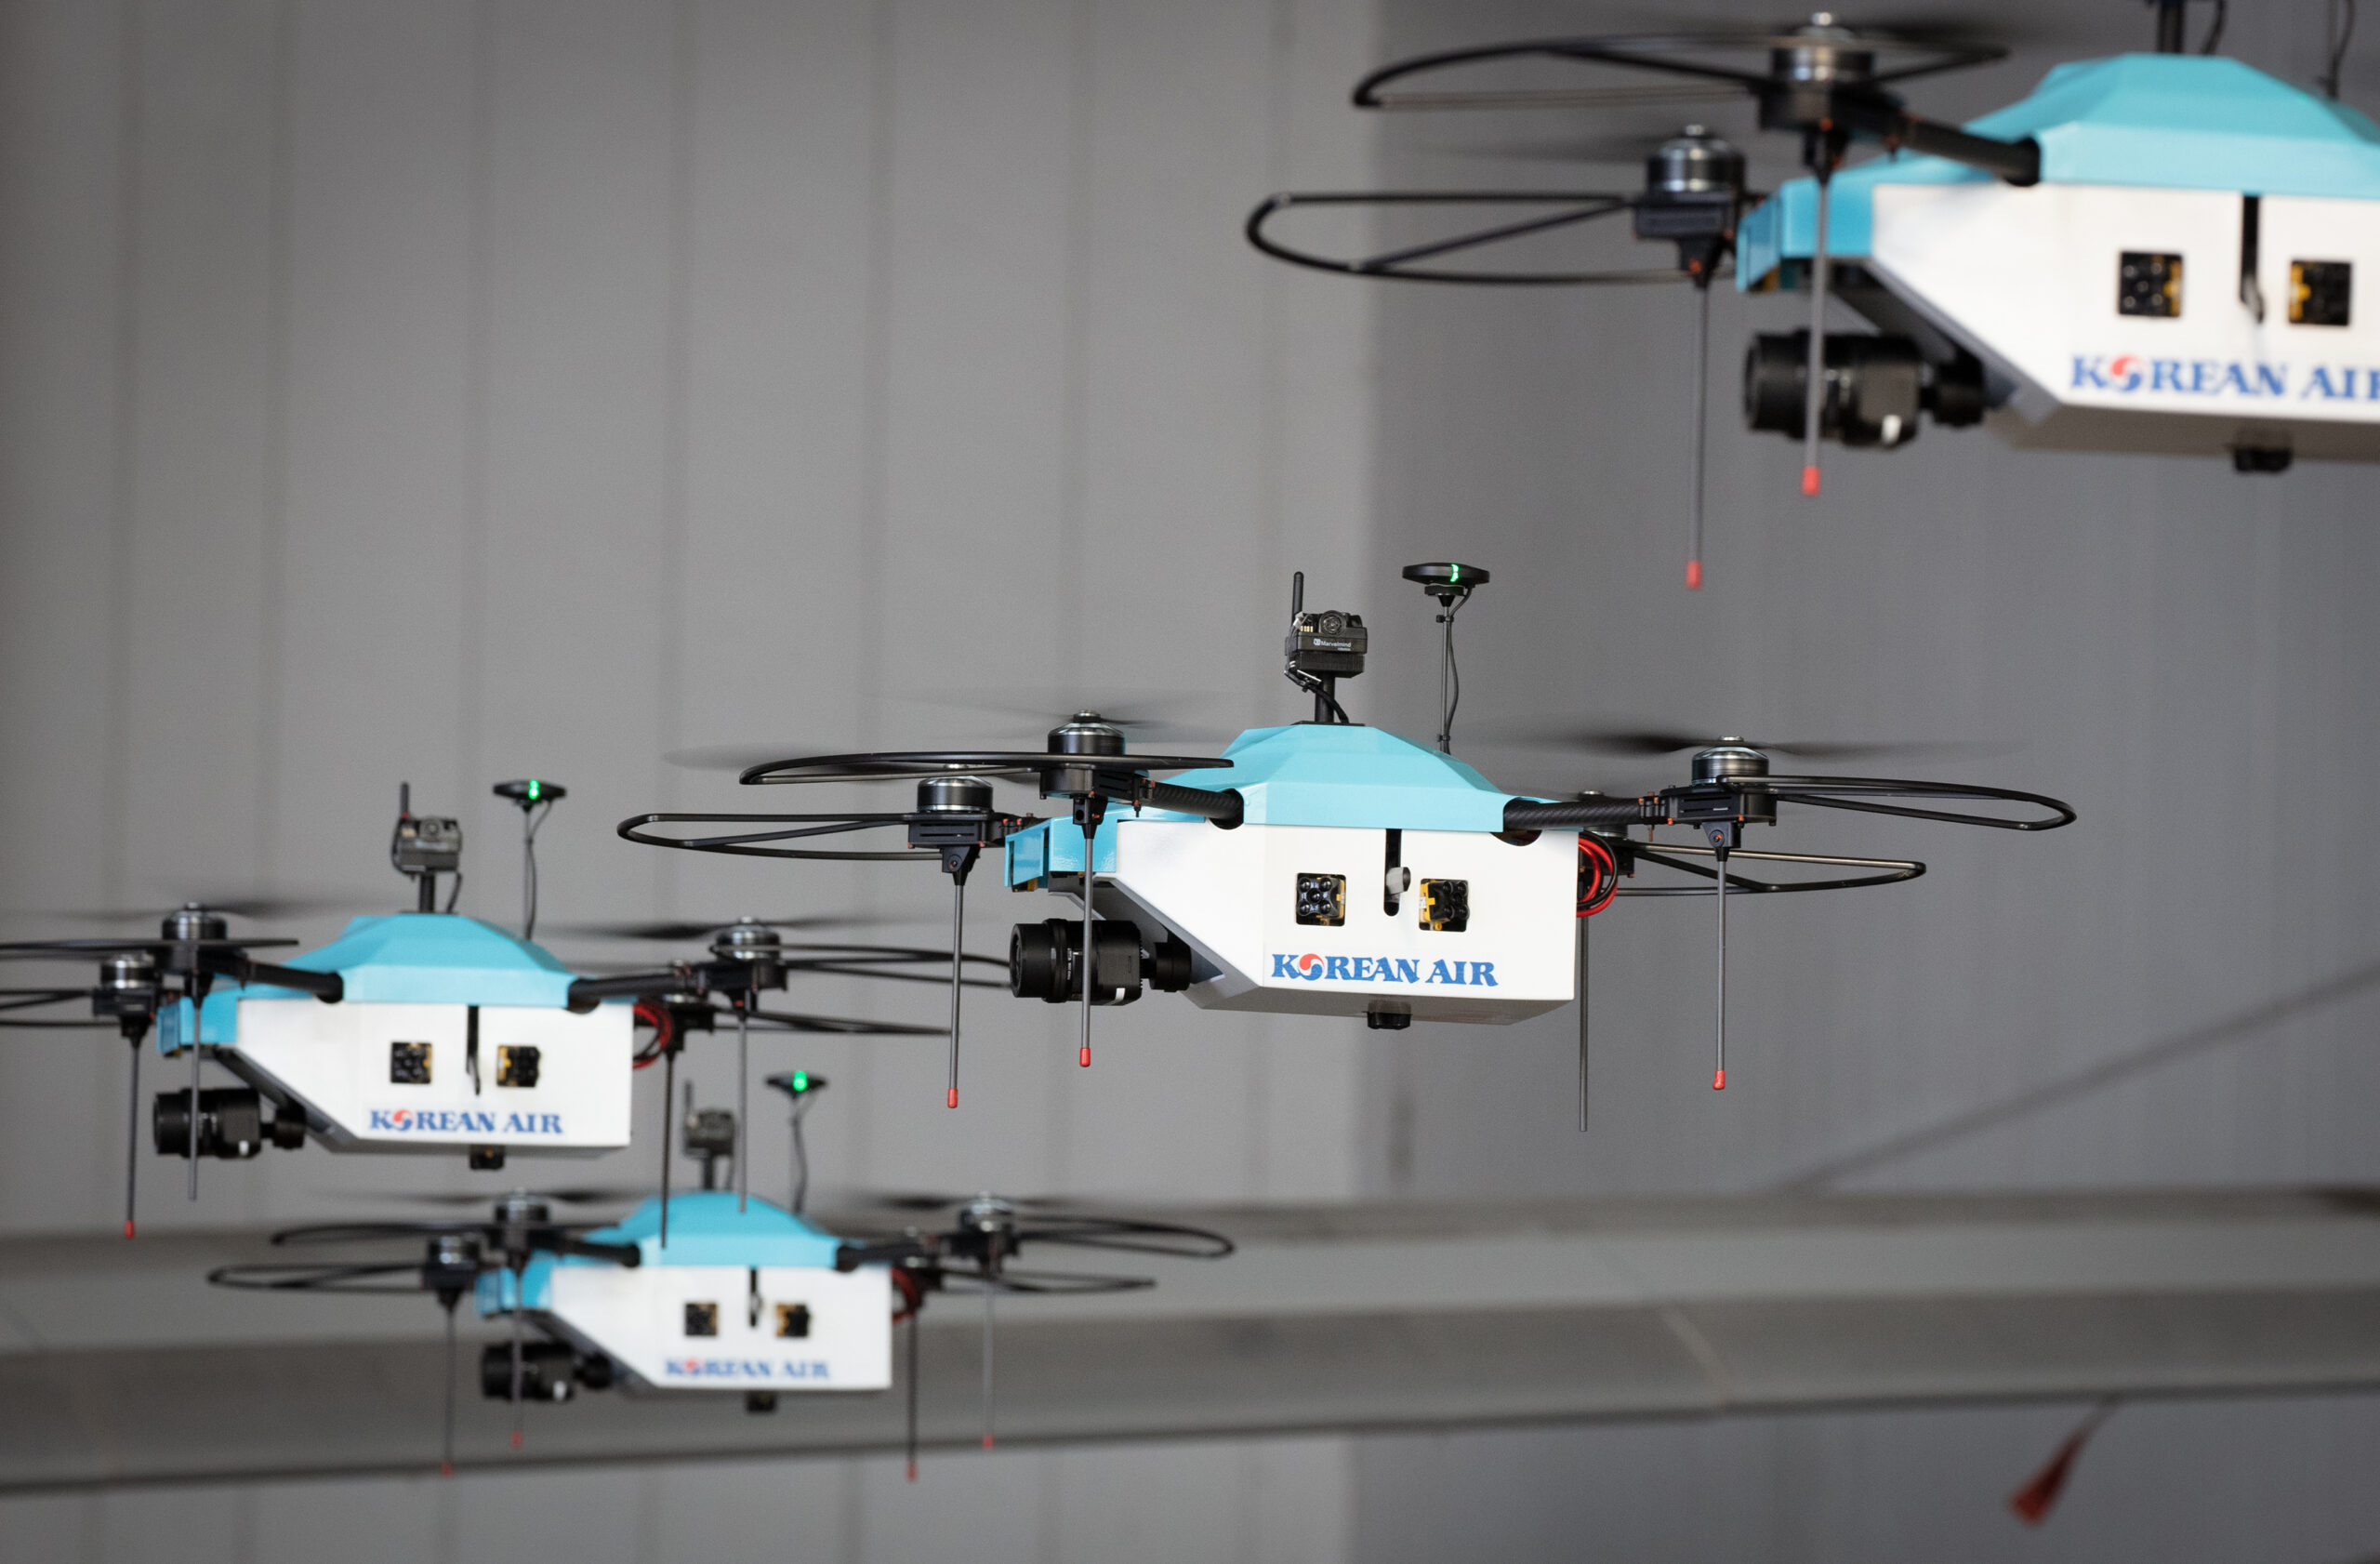 KE Spezzjoni Drone swarms 2 c Korean Air 4 skalat | eTurboNews | eTN